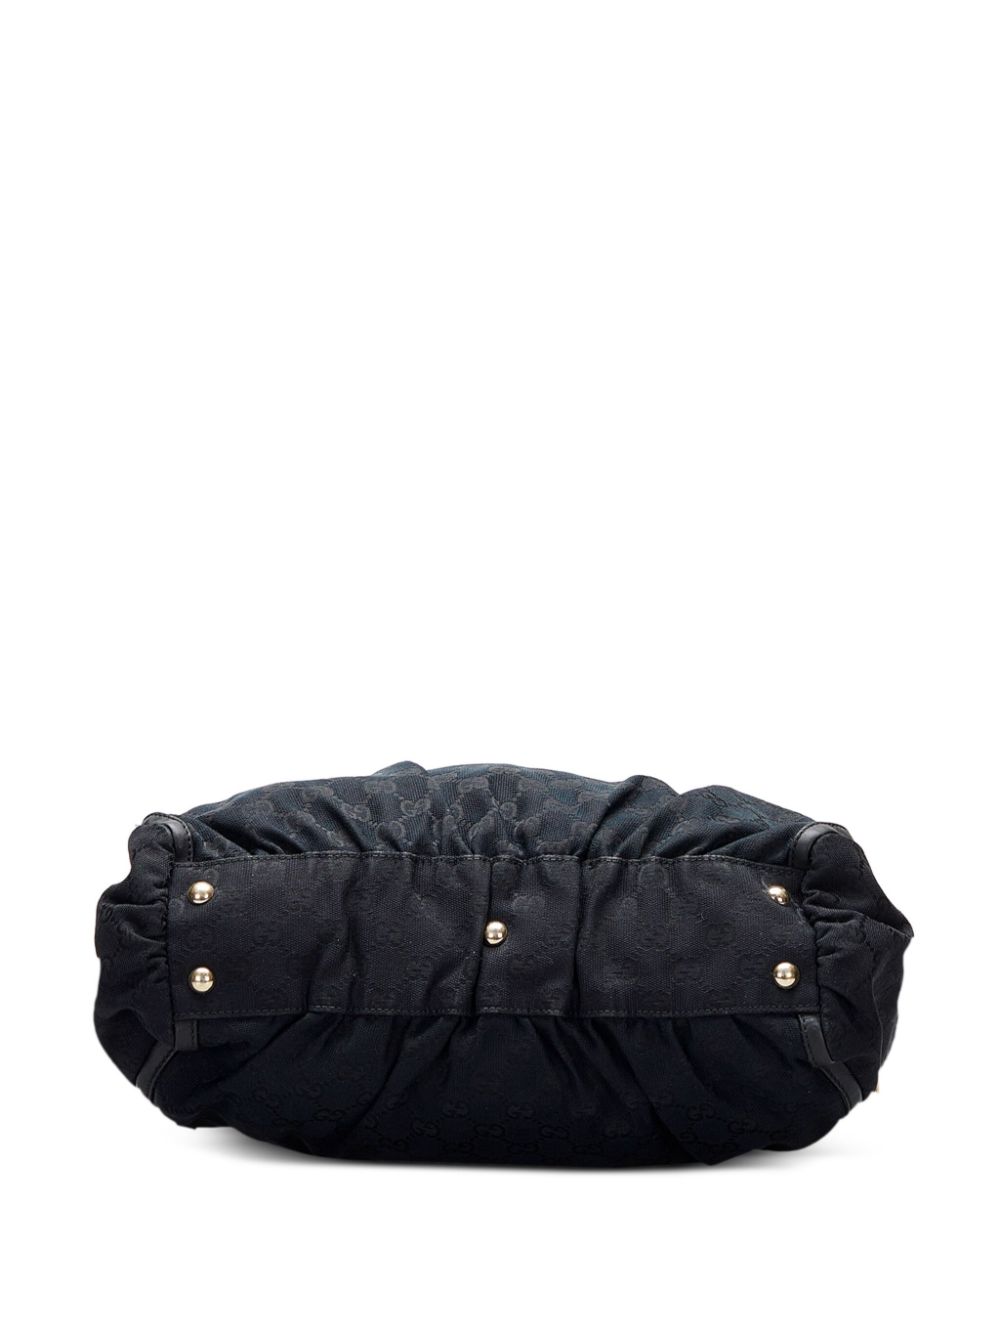 Gucci Pre-Owned Abbey D-ring Handbag - Farfetch